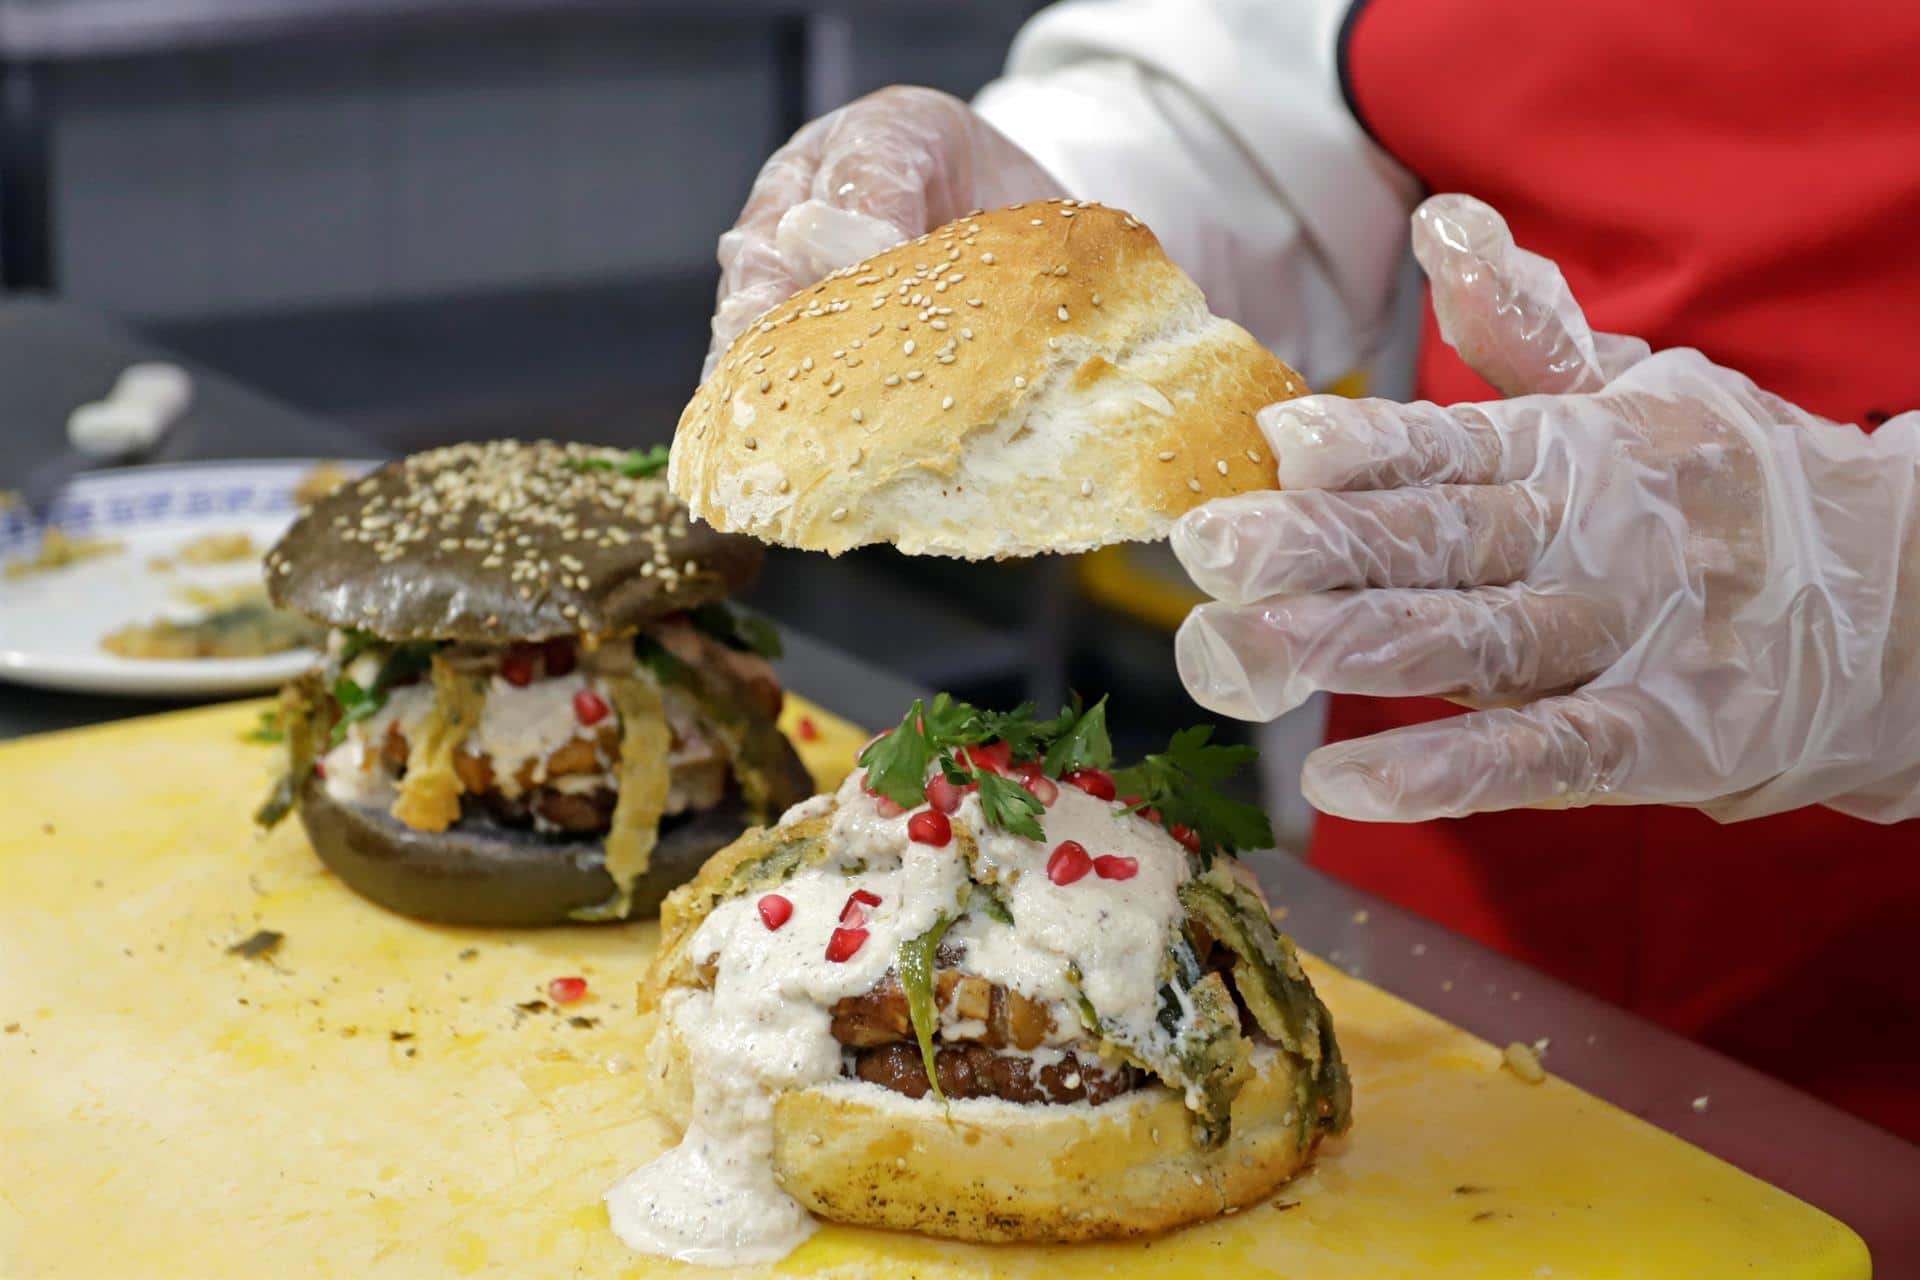 Dos finalistas valencianos compiten en Coruña por elaborar la mejor "burger" de España